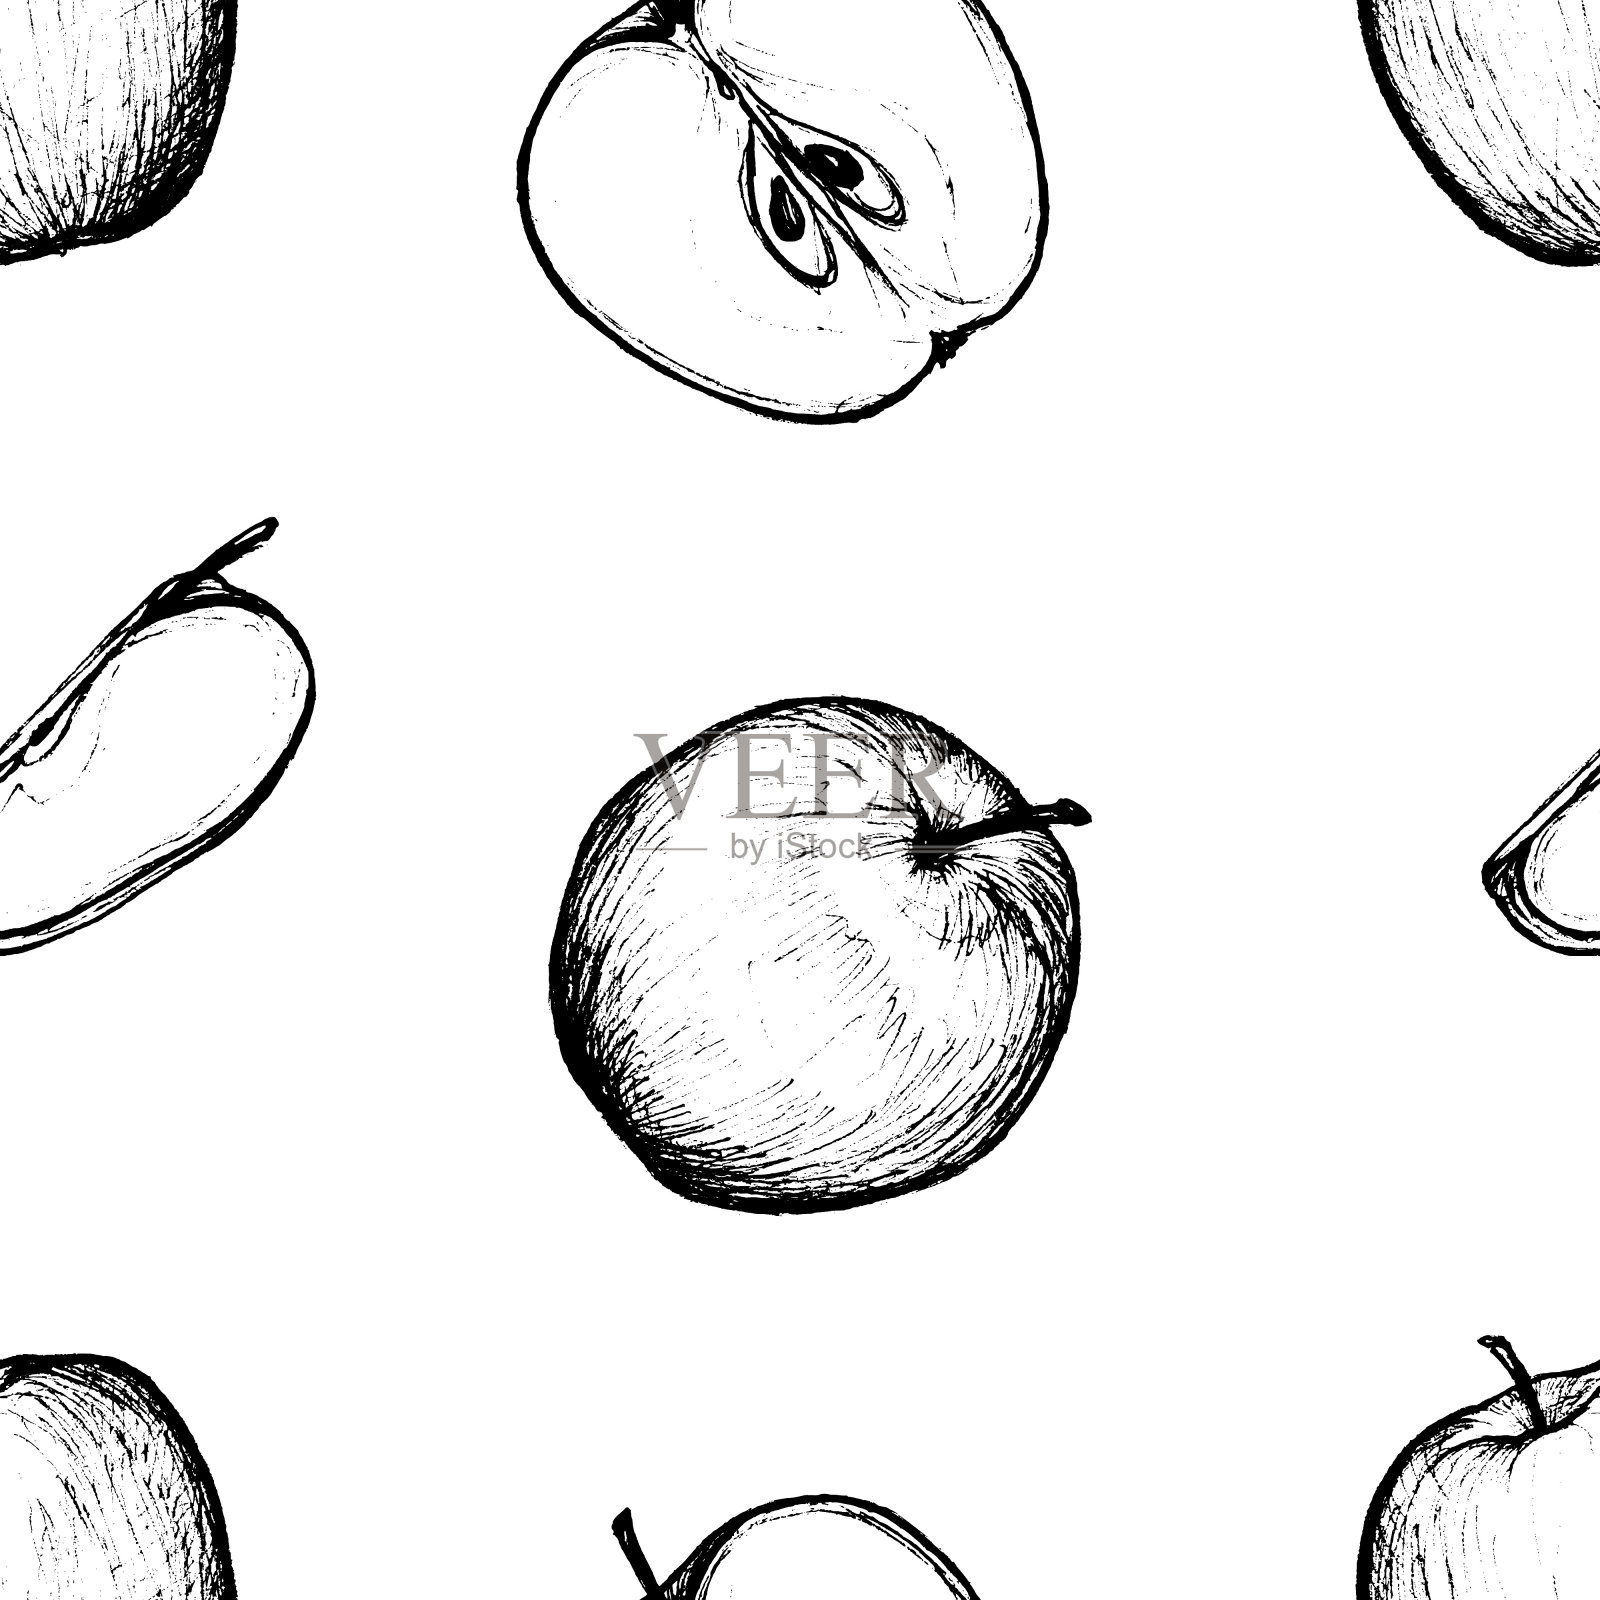 水果菜单-苹果-图形无缝图案插画图片素材